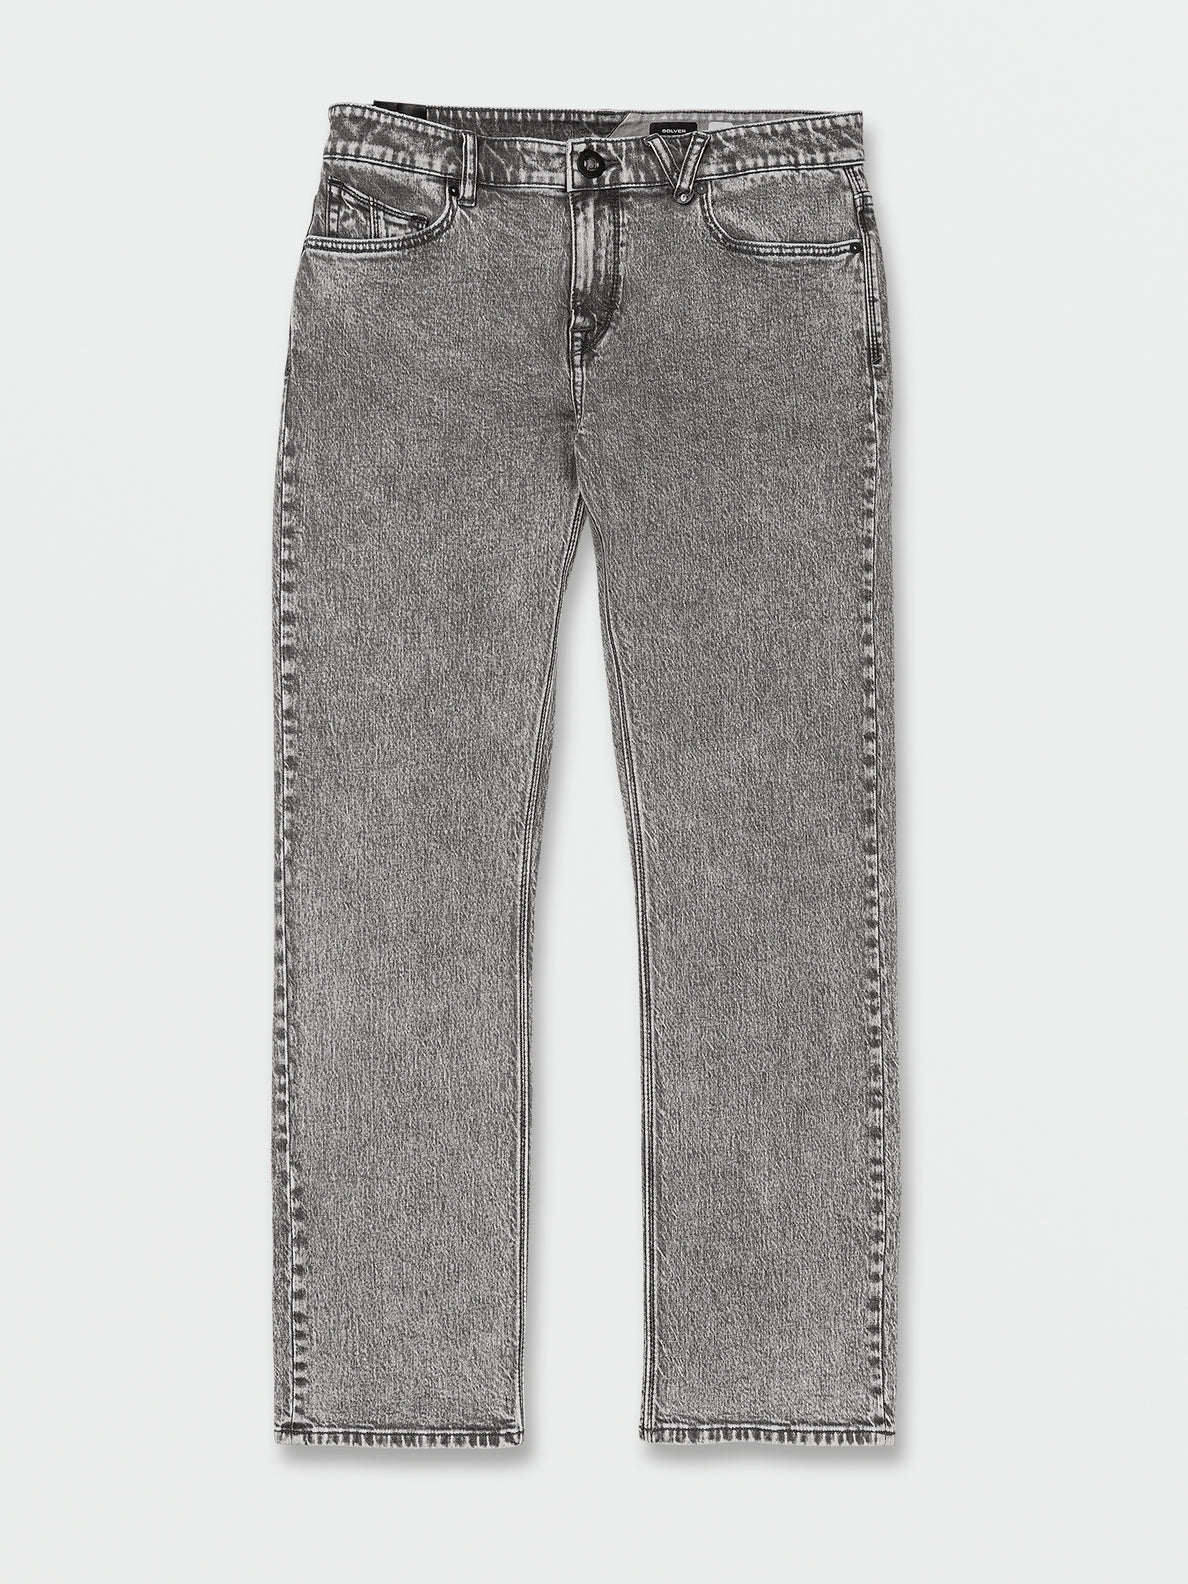 Solver Modern Fit Jeans - True Vintage Black (A1912303_TBV) [F]